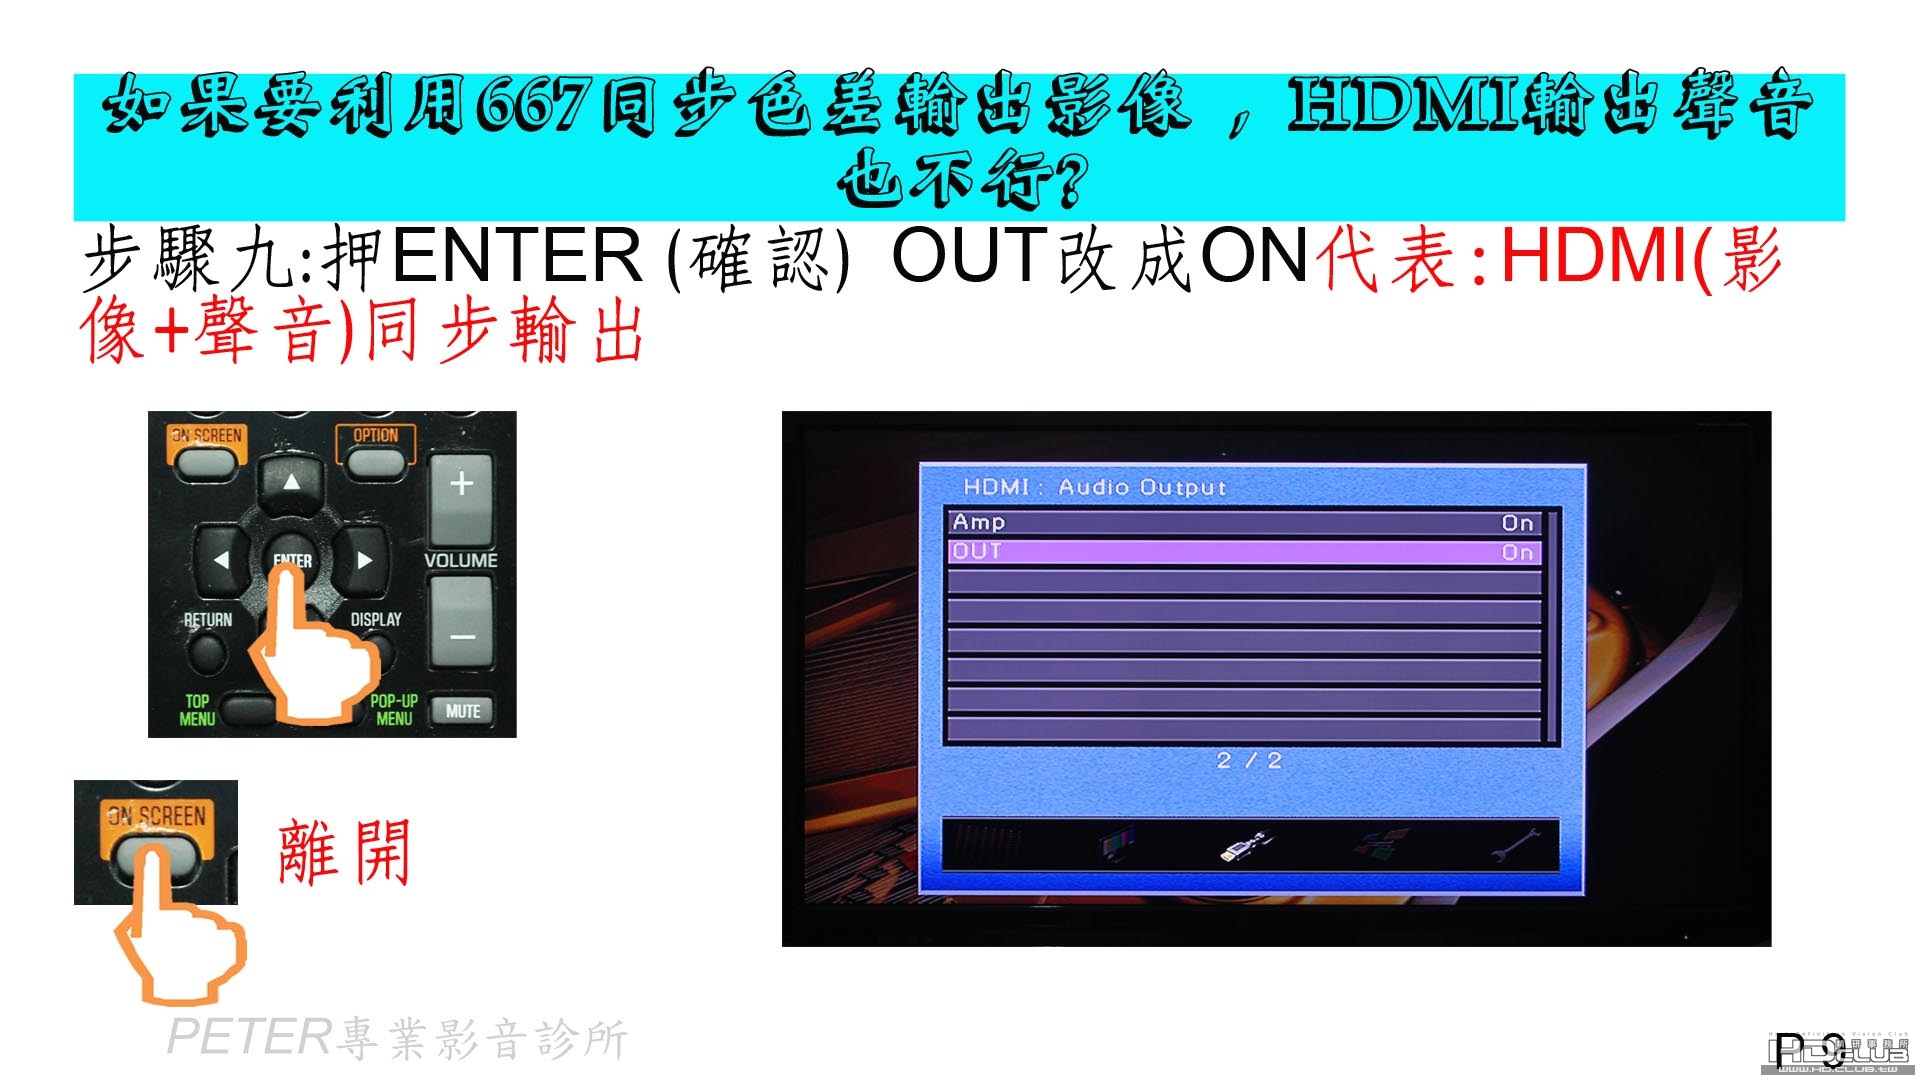 09 如果要利用667同步色差輸出影像 , HDMI輸出聲音也不行.jpg